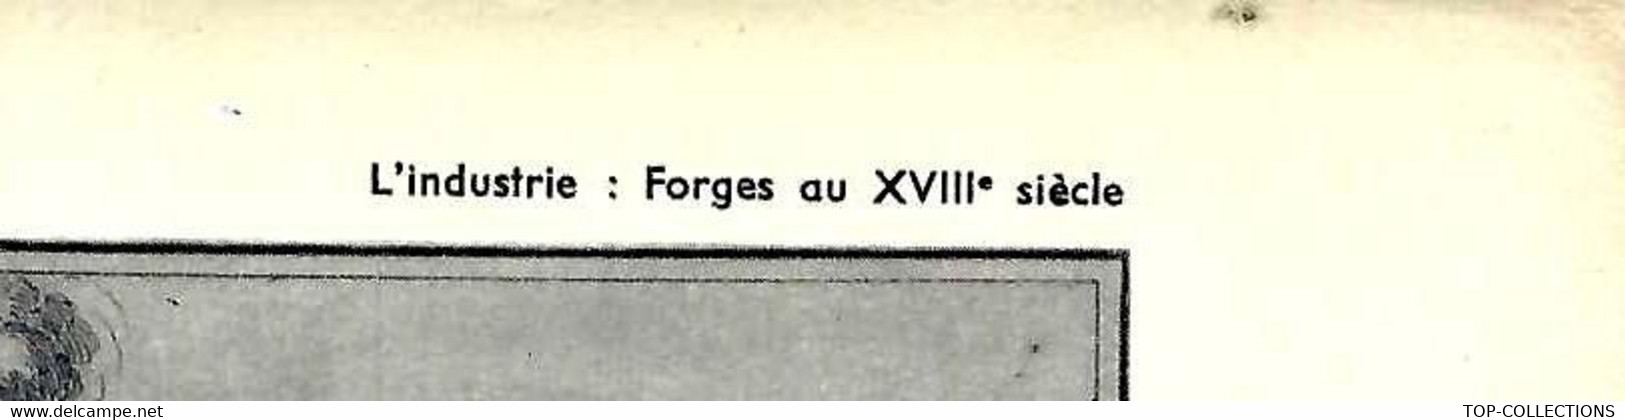 INDUSTRIE DES FORGES AU XVIII° SIECLE OUTIL PEDAGOGIQUE HACHETTE 1954  B.E.V.SCANS - Collezioni